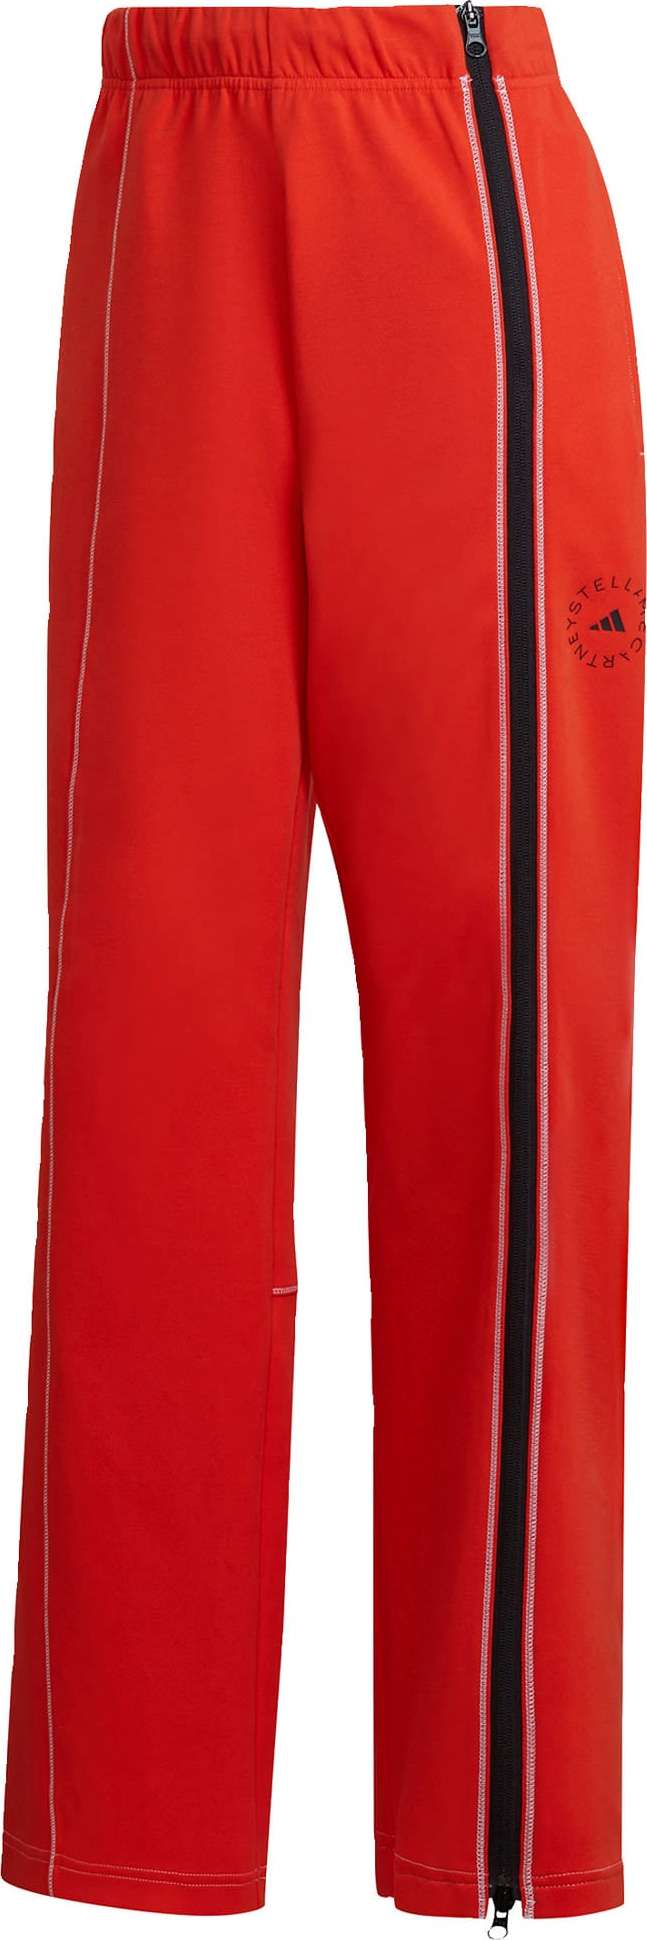 ADIDAS BY STELLA MCCARTNEY Sportovní kalhoty oranžová / černá